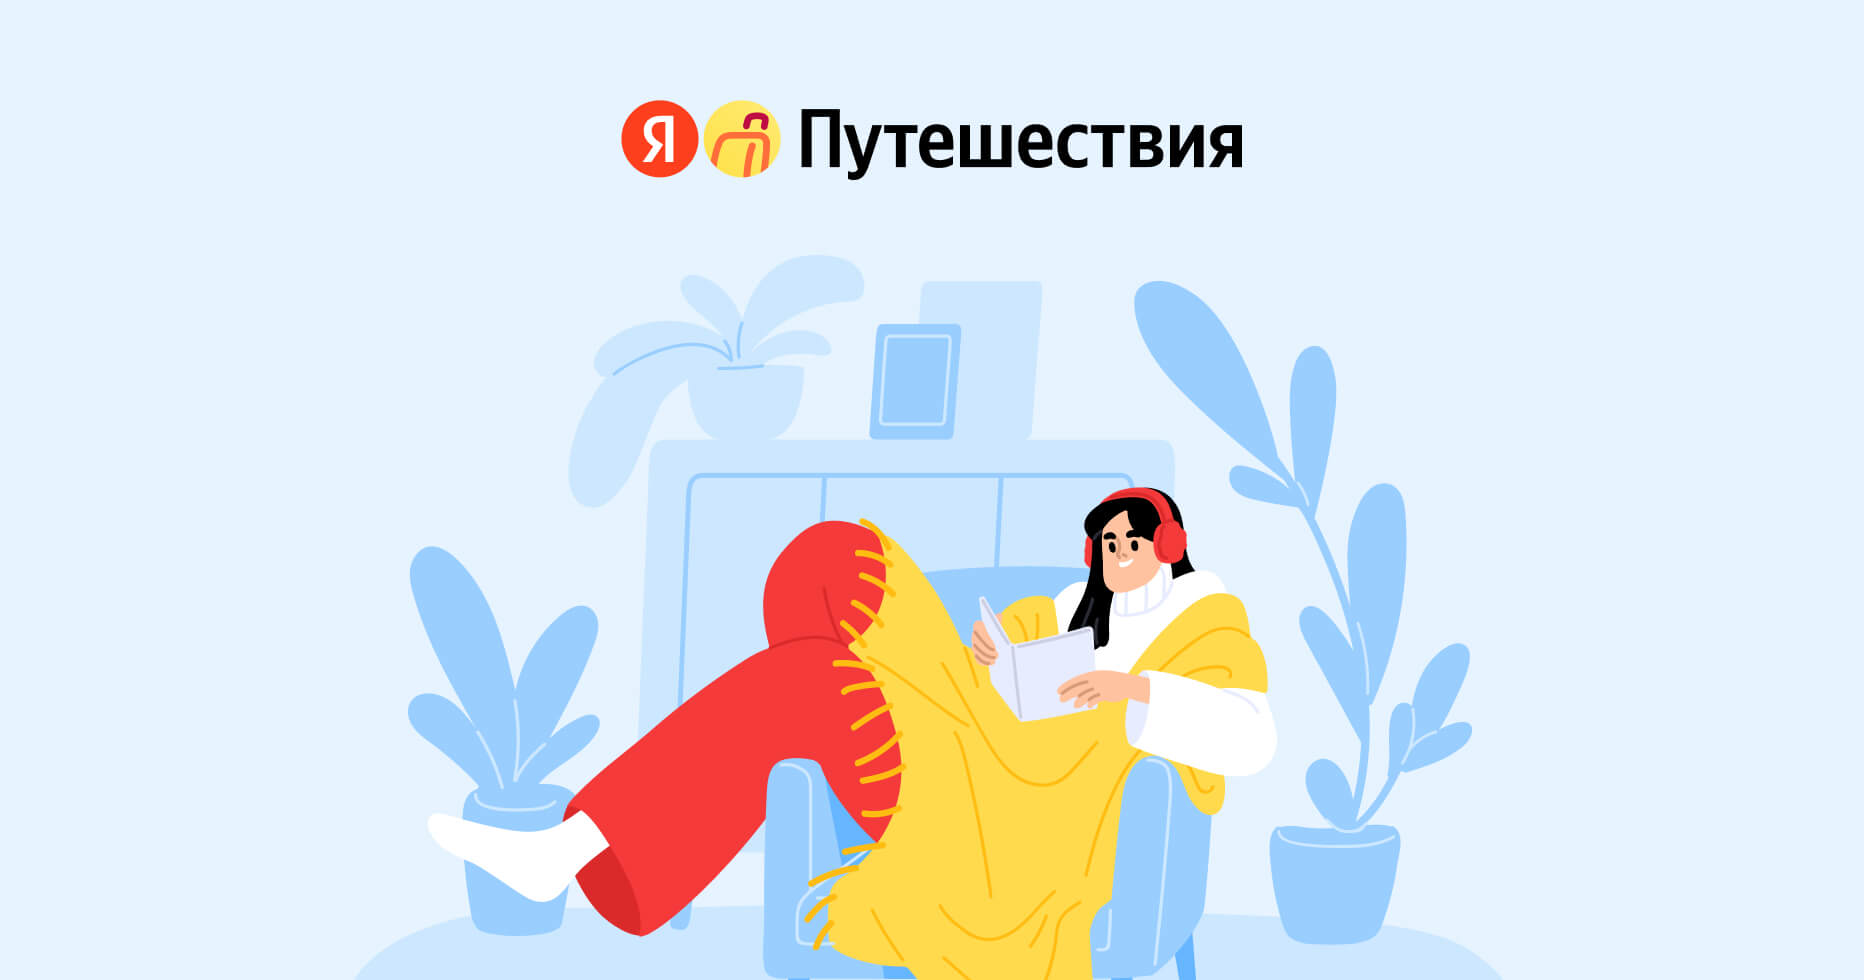 Яндекс и билайн запустили акцию. При бронировании отелей можно вернуть 10% от суммы на счёт телефона